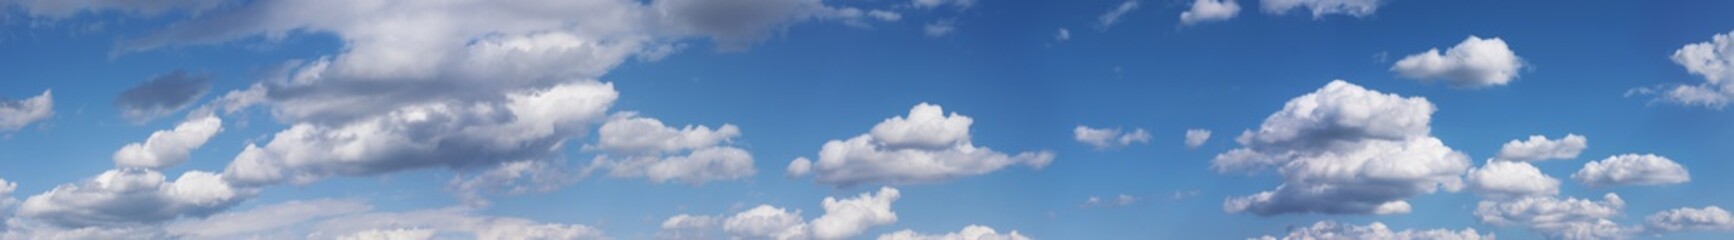 Fototapeta premium Niebo z chmurami